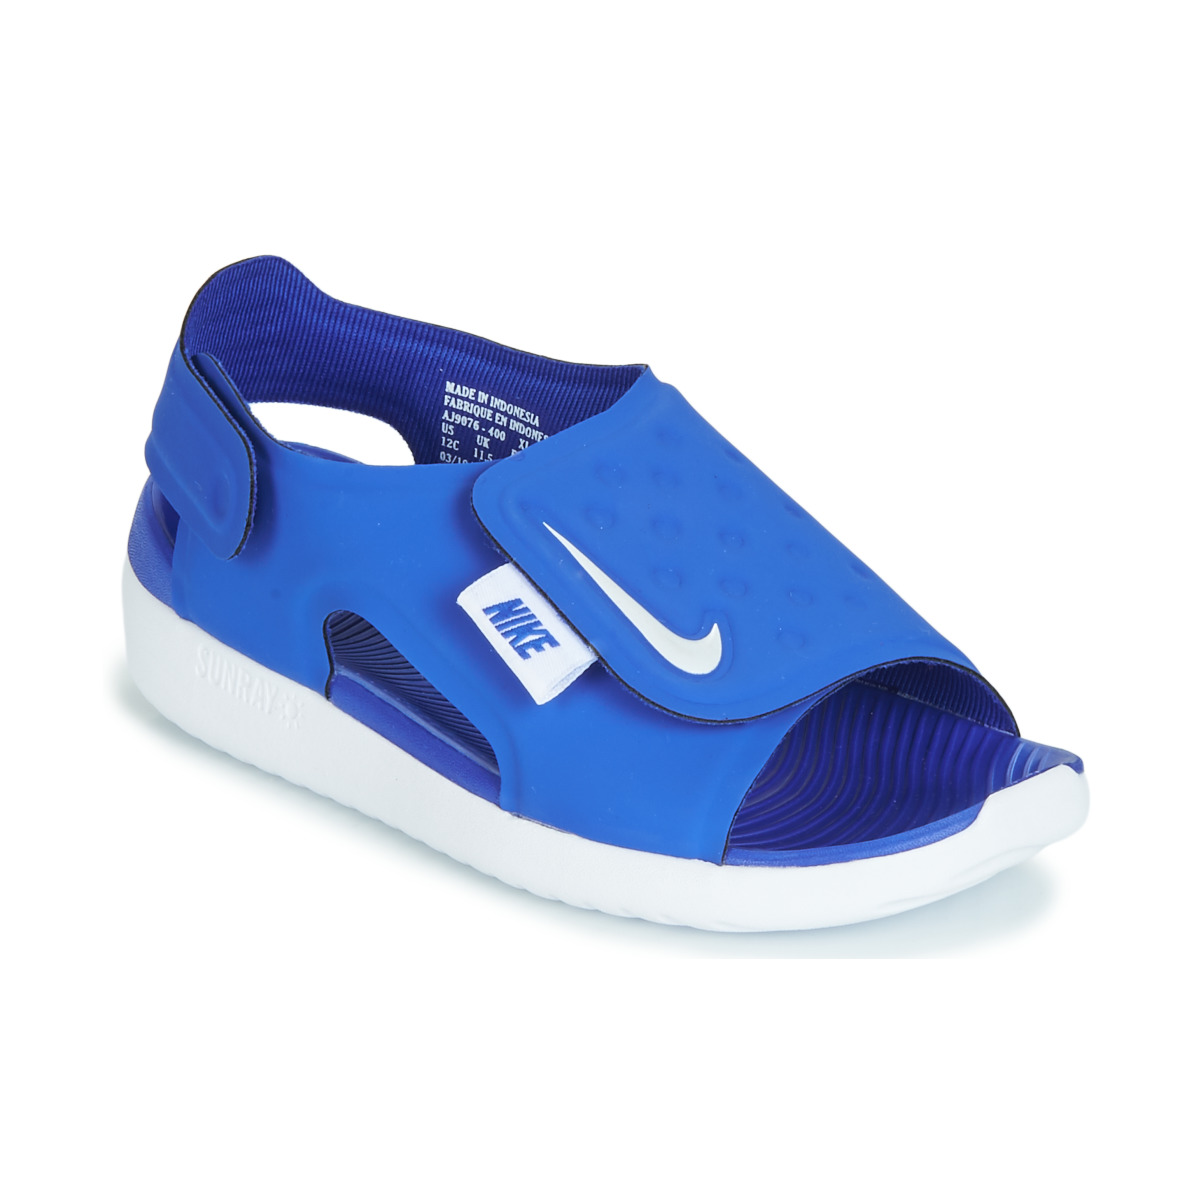 Sapatos Rapaz Sandálias Nike SUNRAY ADJUST 5 Azul